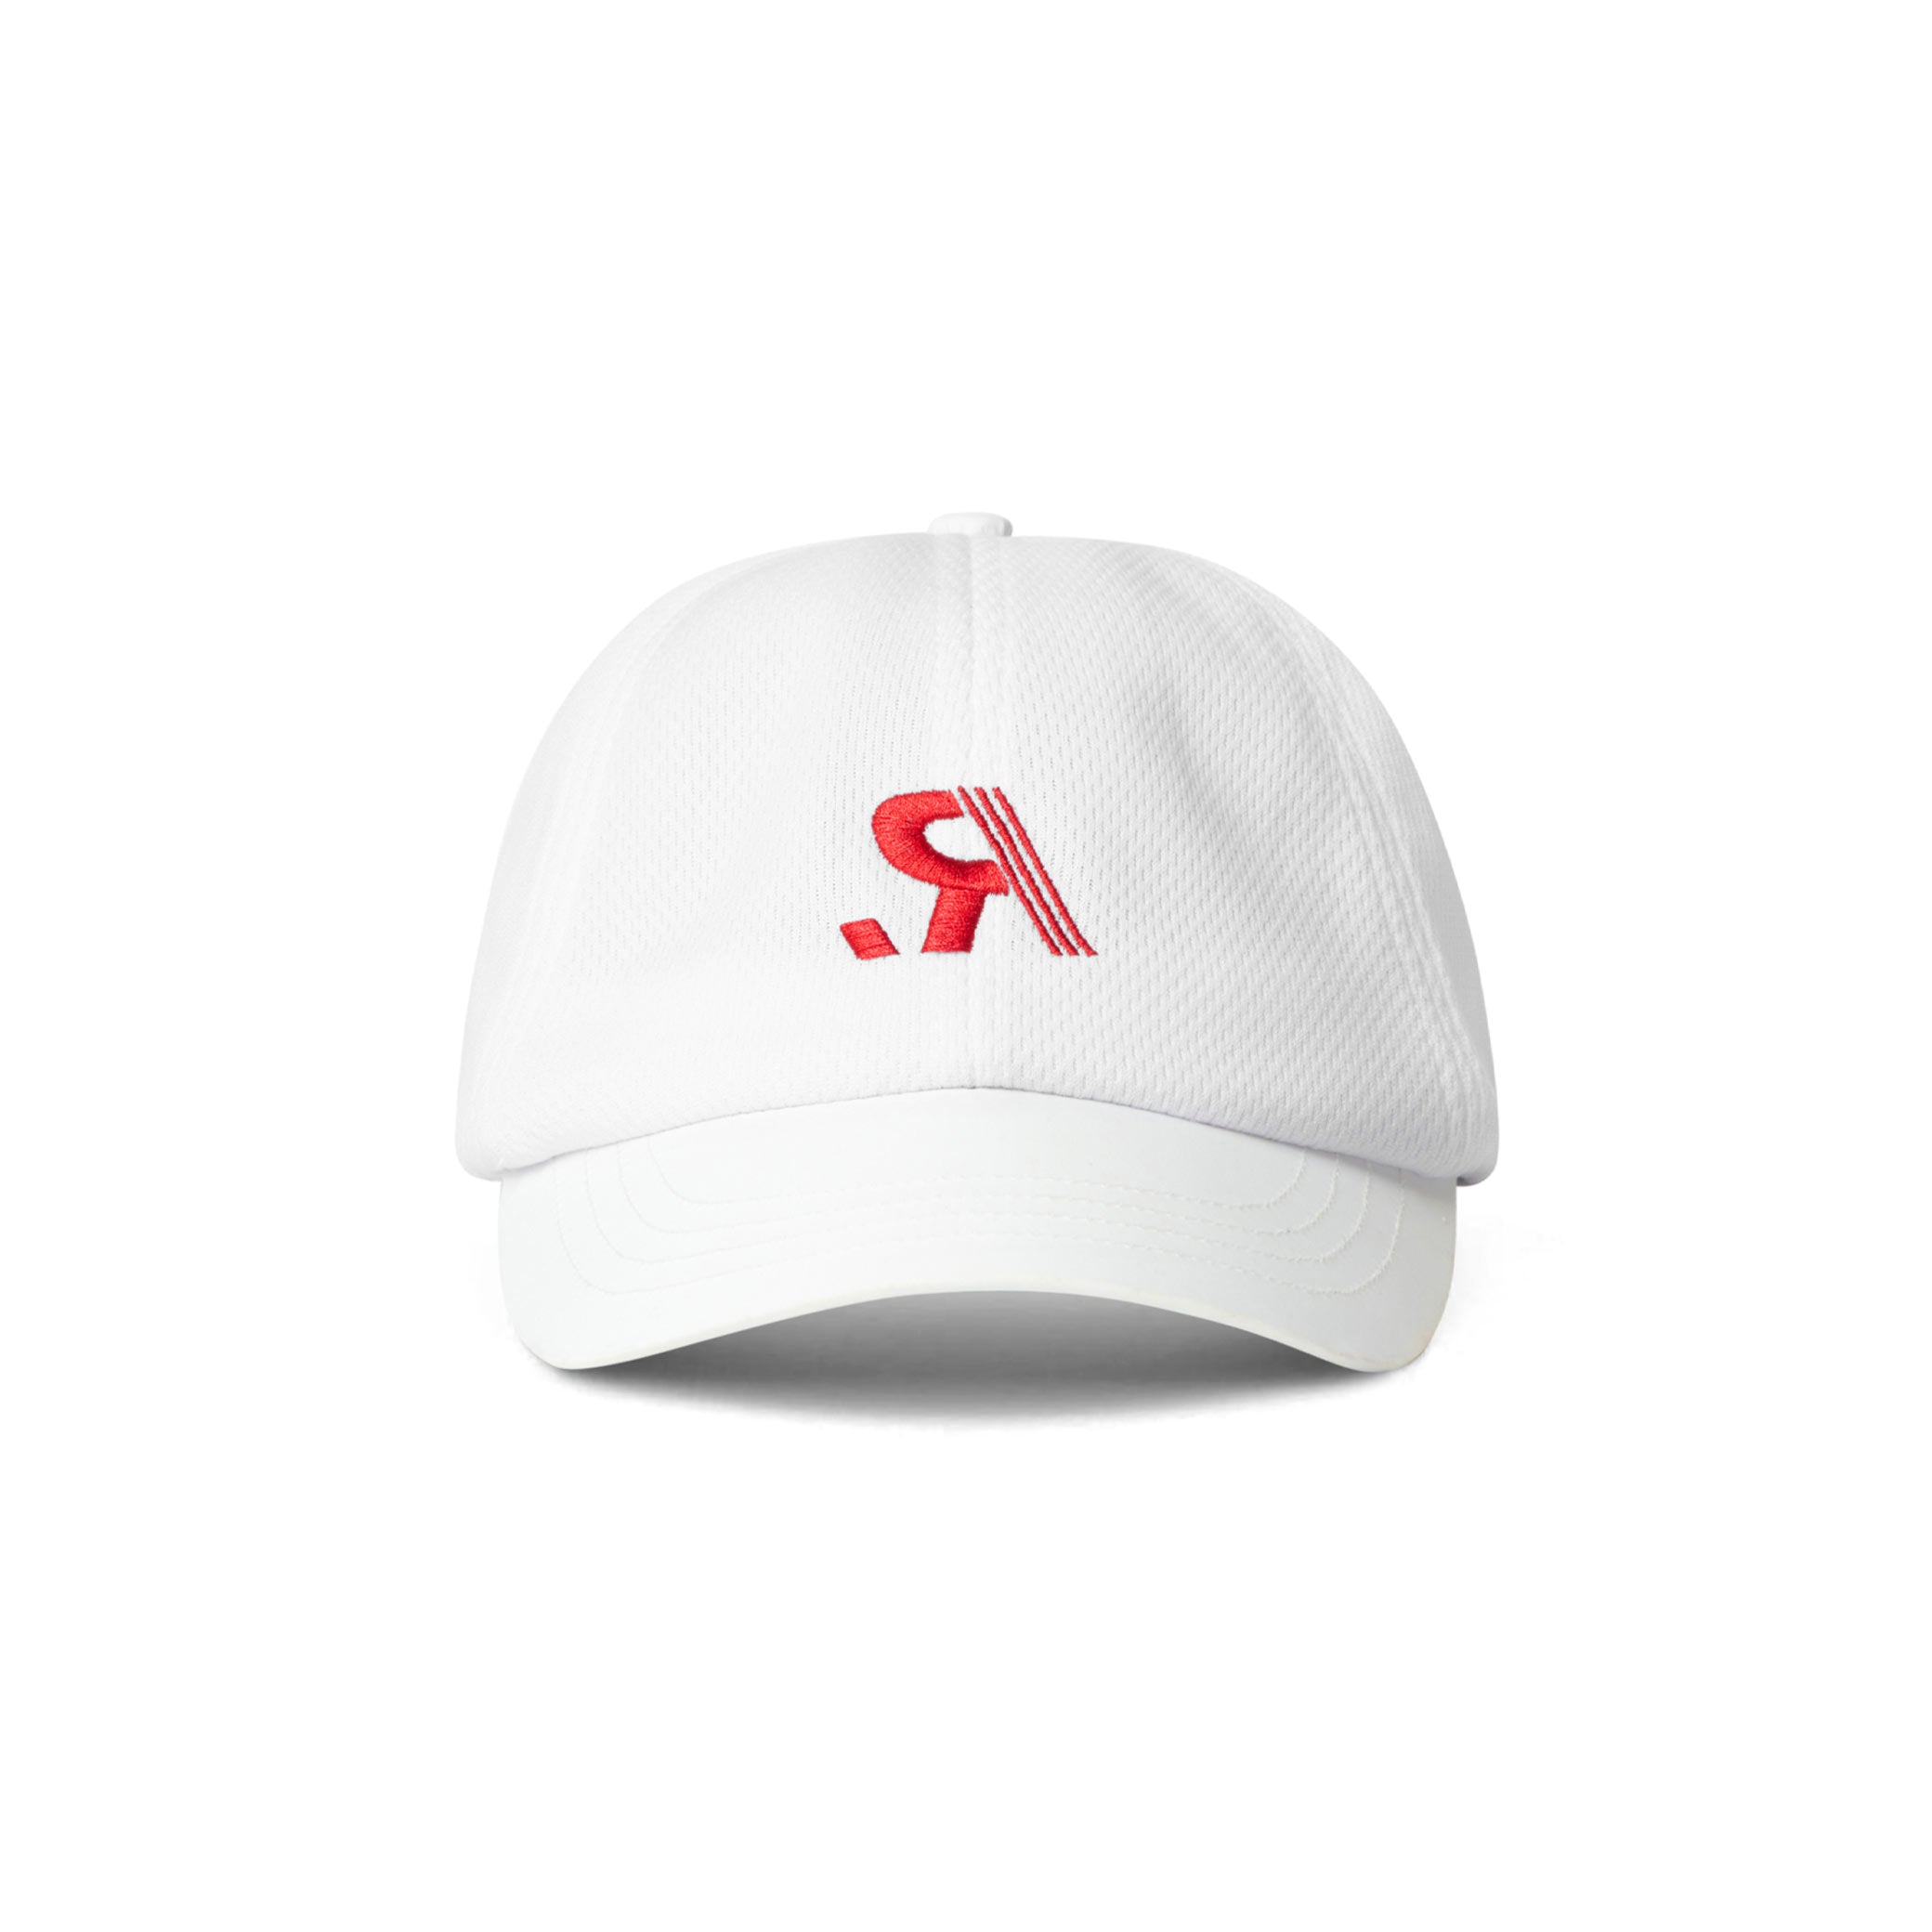 R.SPORT Tennis Hat - White